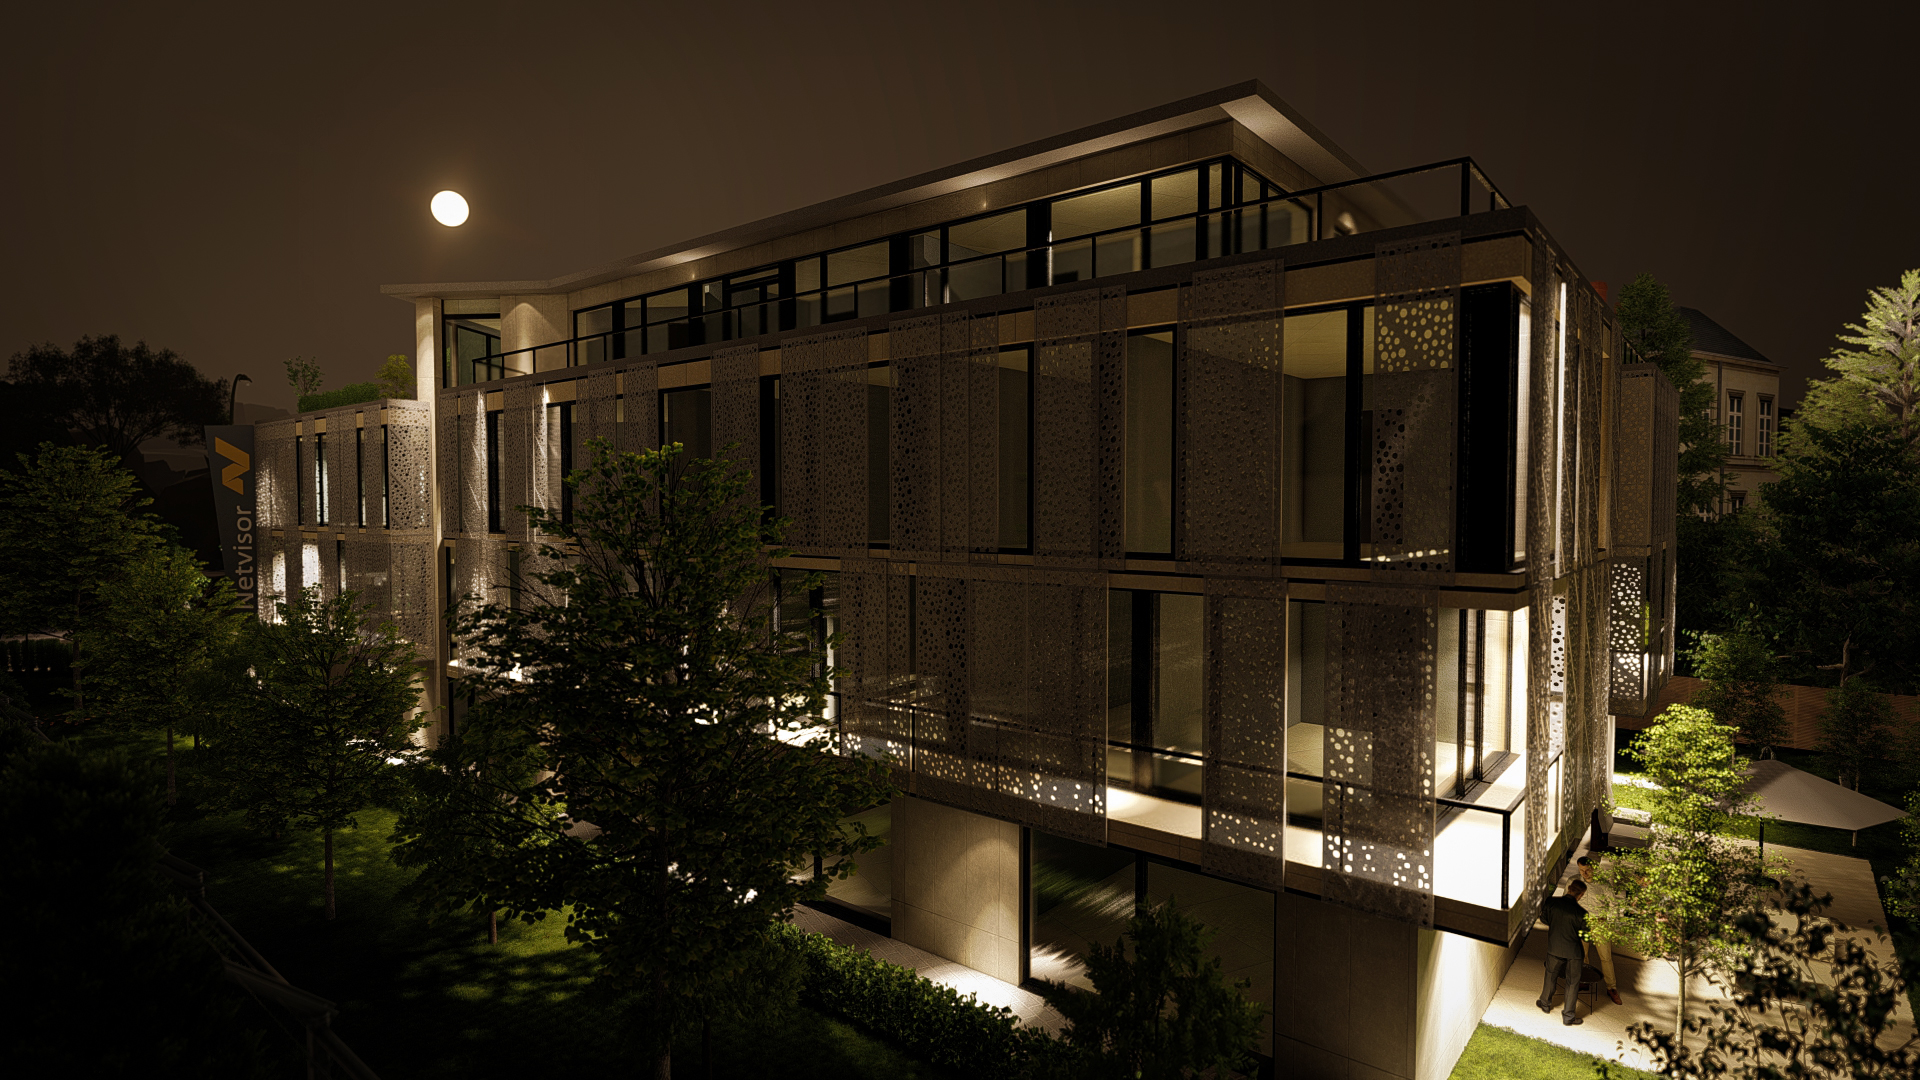 Építészeti külső látványtervezés - élethű esti kép a cég épületről